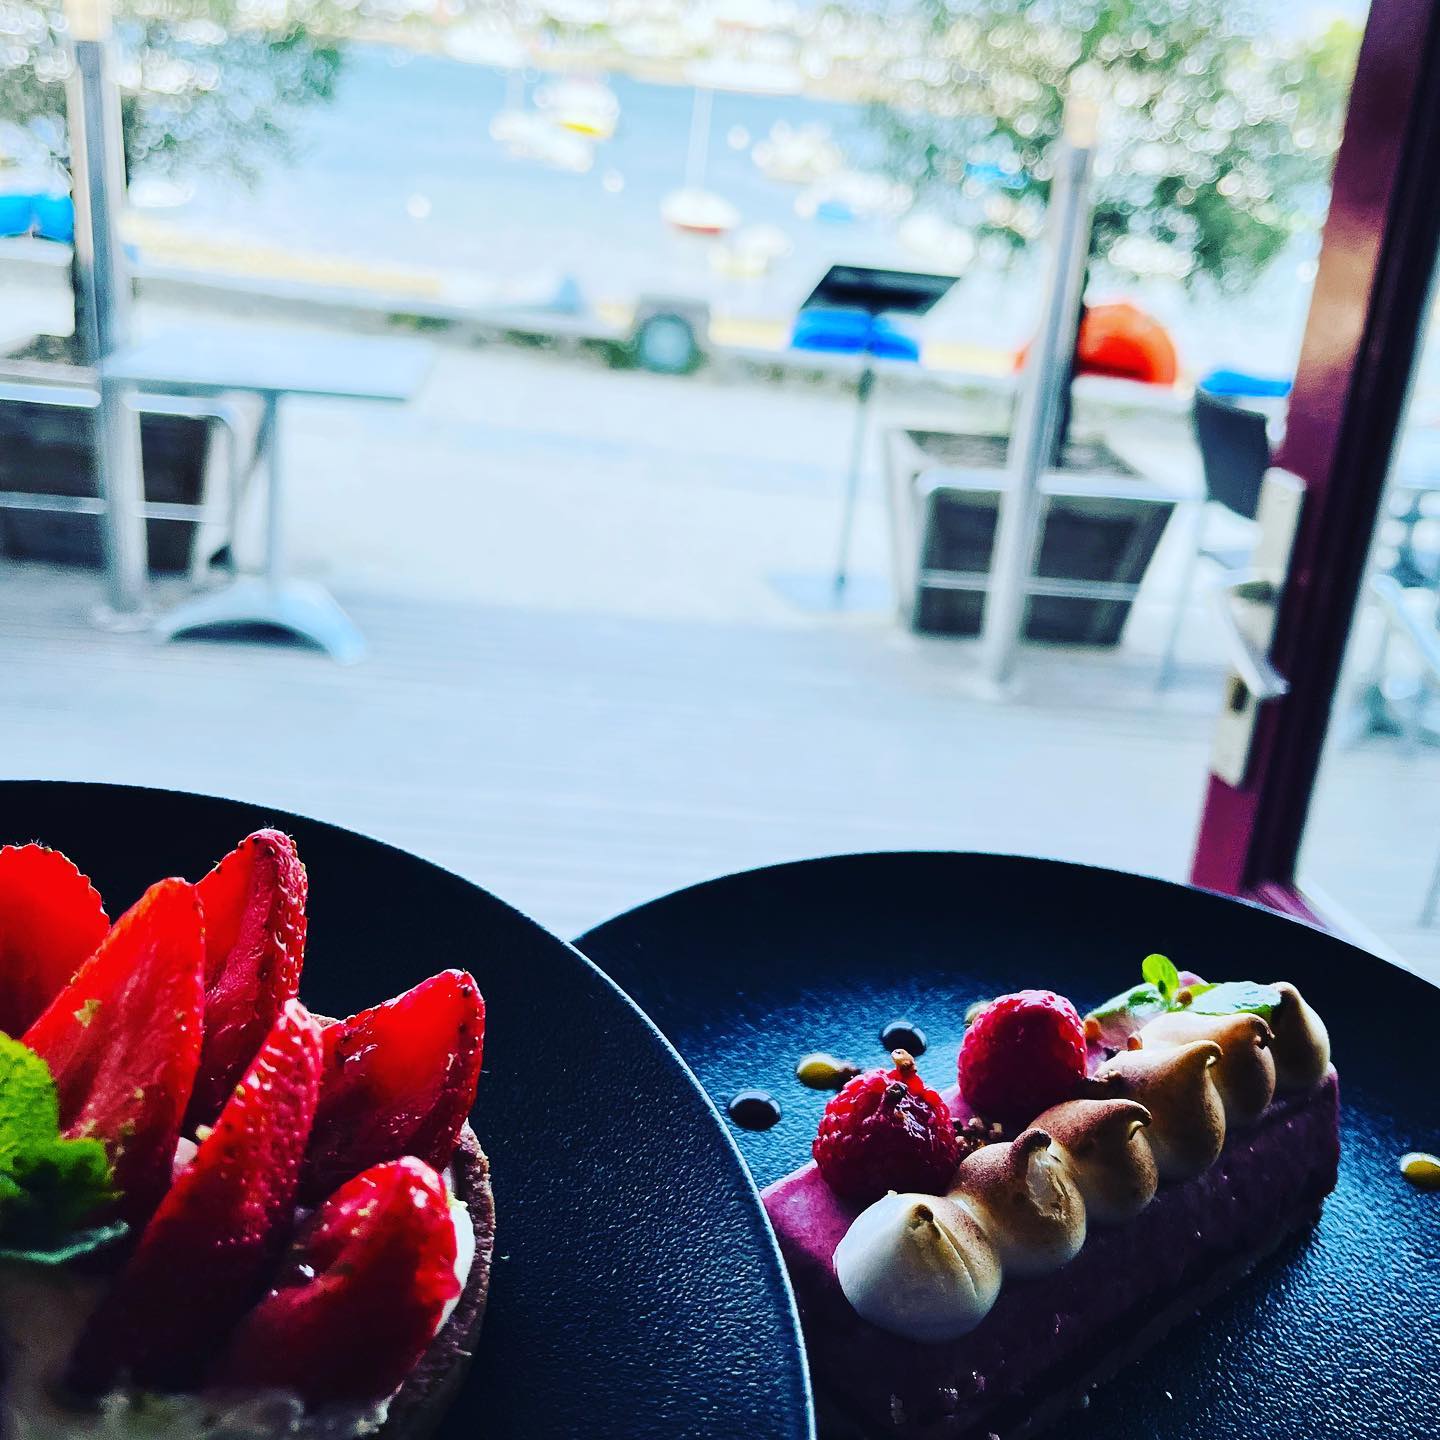 Tarte aux fraises ou entremet aux fruits rouges pour le dessert ? Dans tous les cas, c’est servi avec vue sur mer. 😎